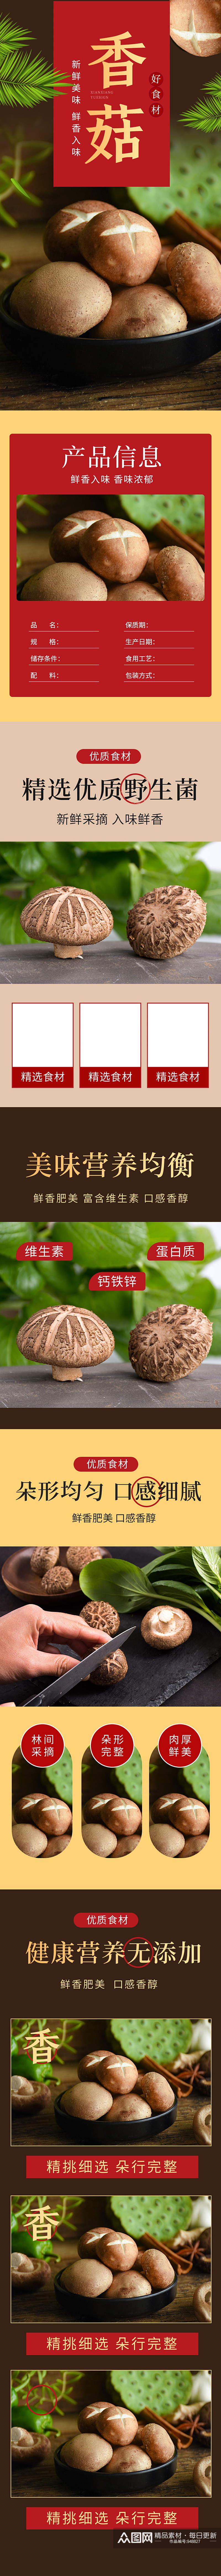 食品生鲜土特产香菇蘑菇详情页素材